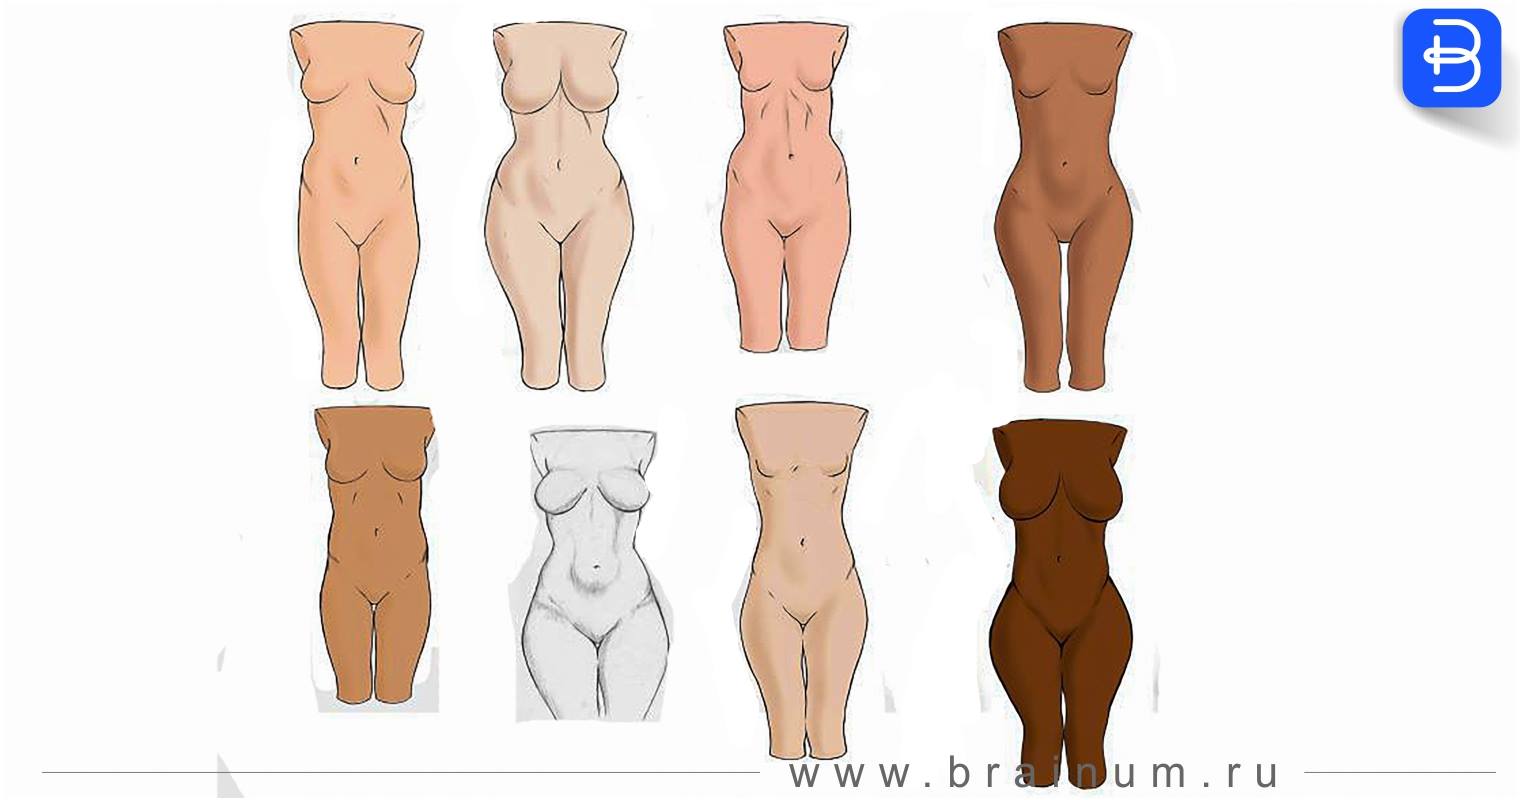 Tipos de cuerpos de mujeres